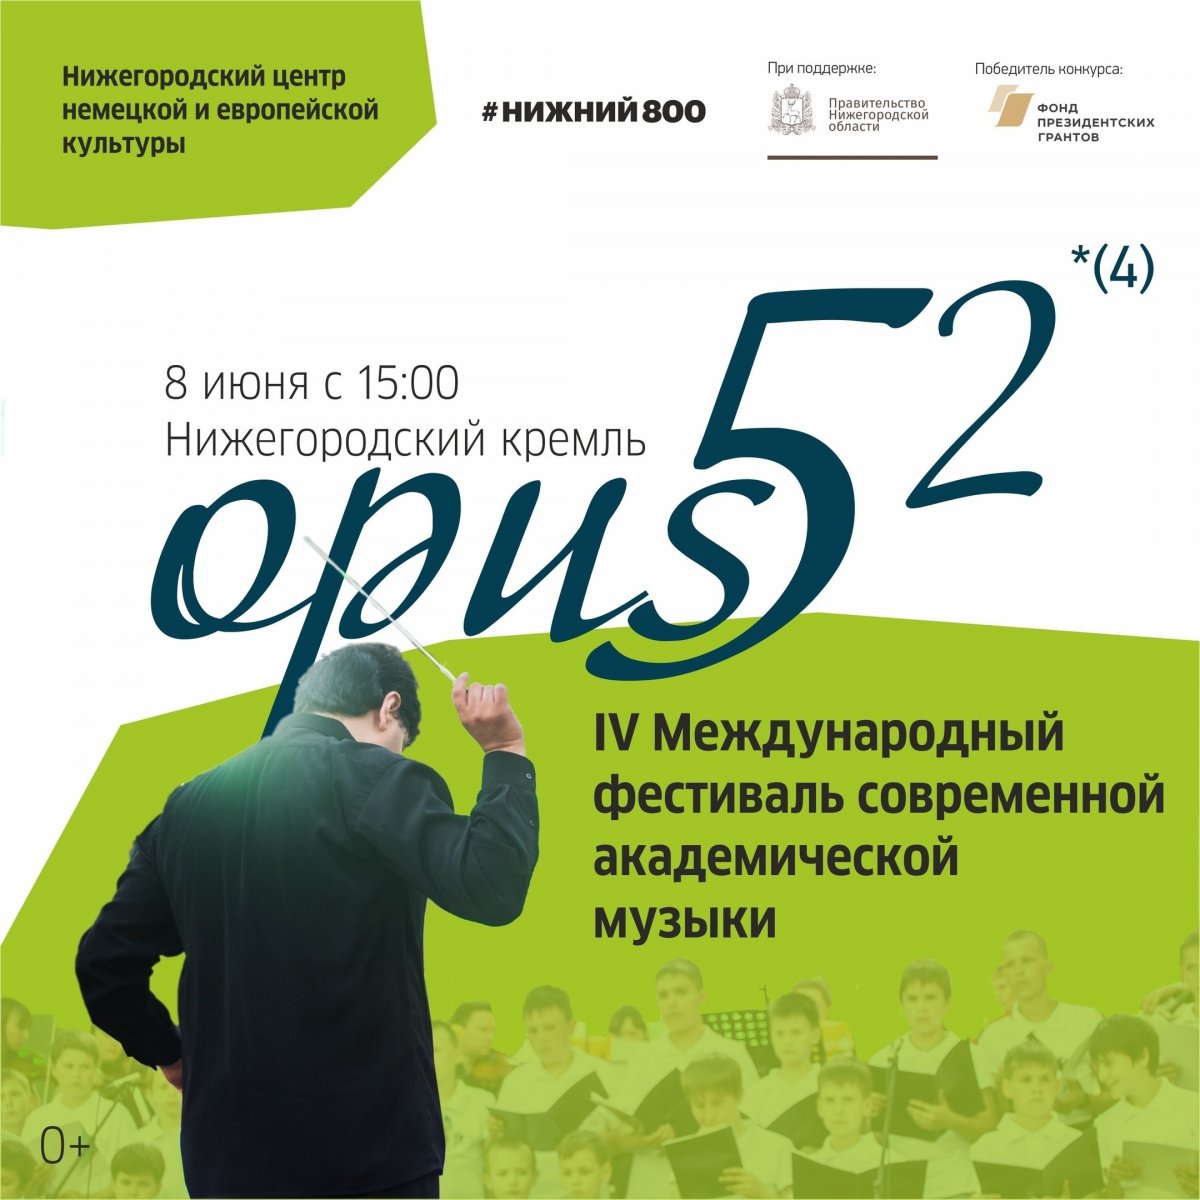 Приглашаем студентов Мининского университета на музыкальный open air фестиваль Opus 52 в Кремле!